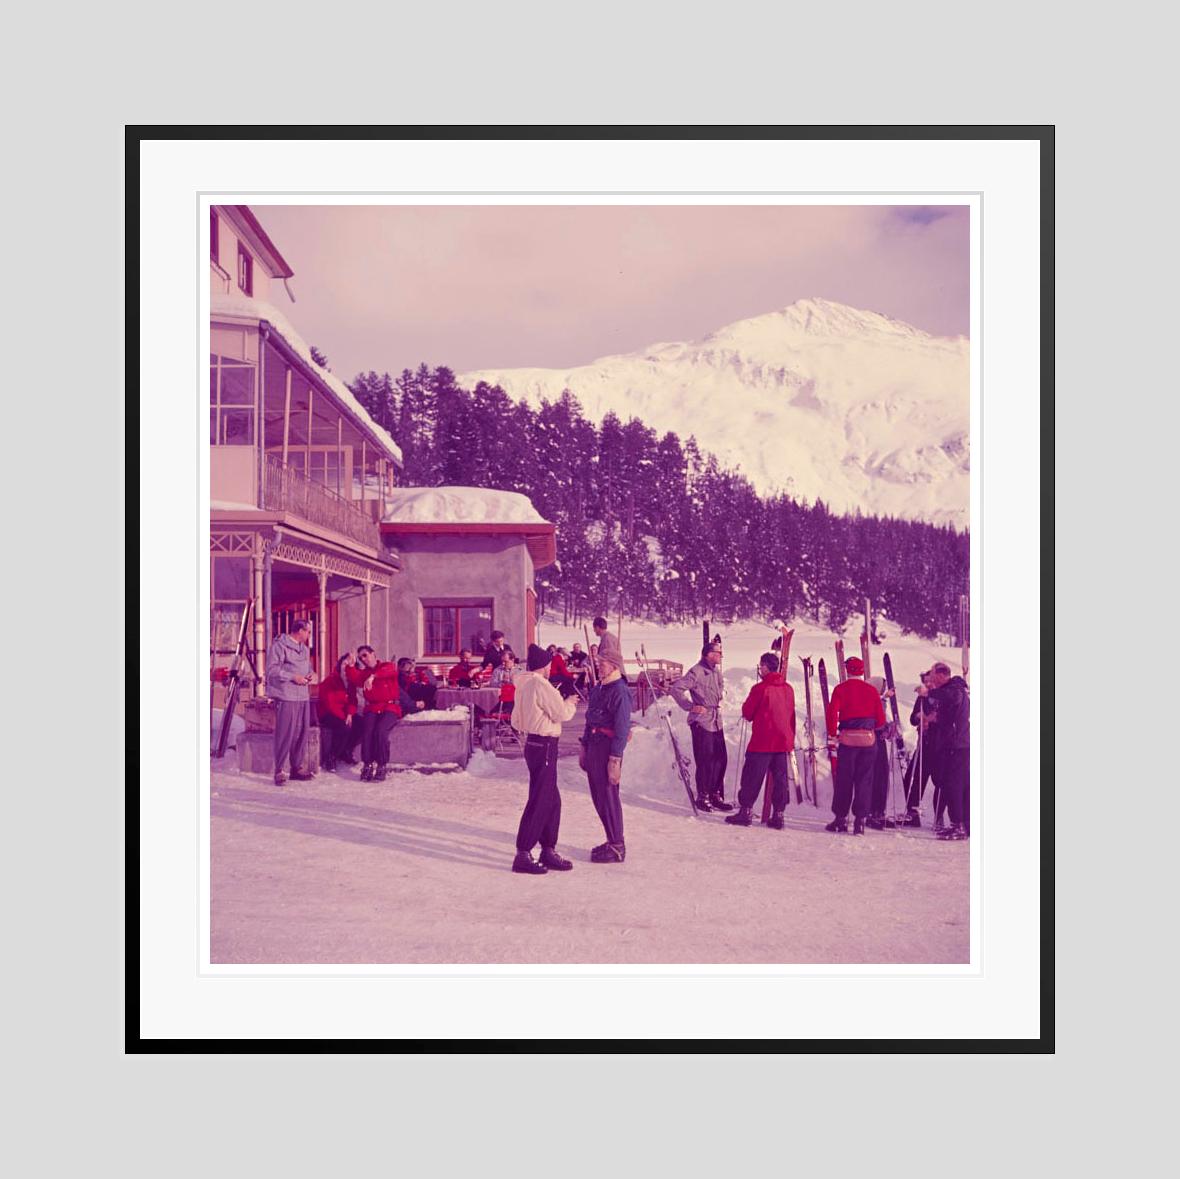 Discussion sur le ski 

1951

Skieurs discutant à la terrasse d'un restaurant, 1951. 

par Toni Frissell

40 x 40